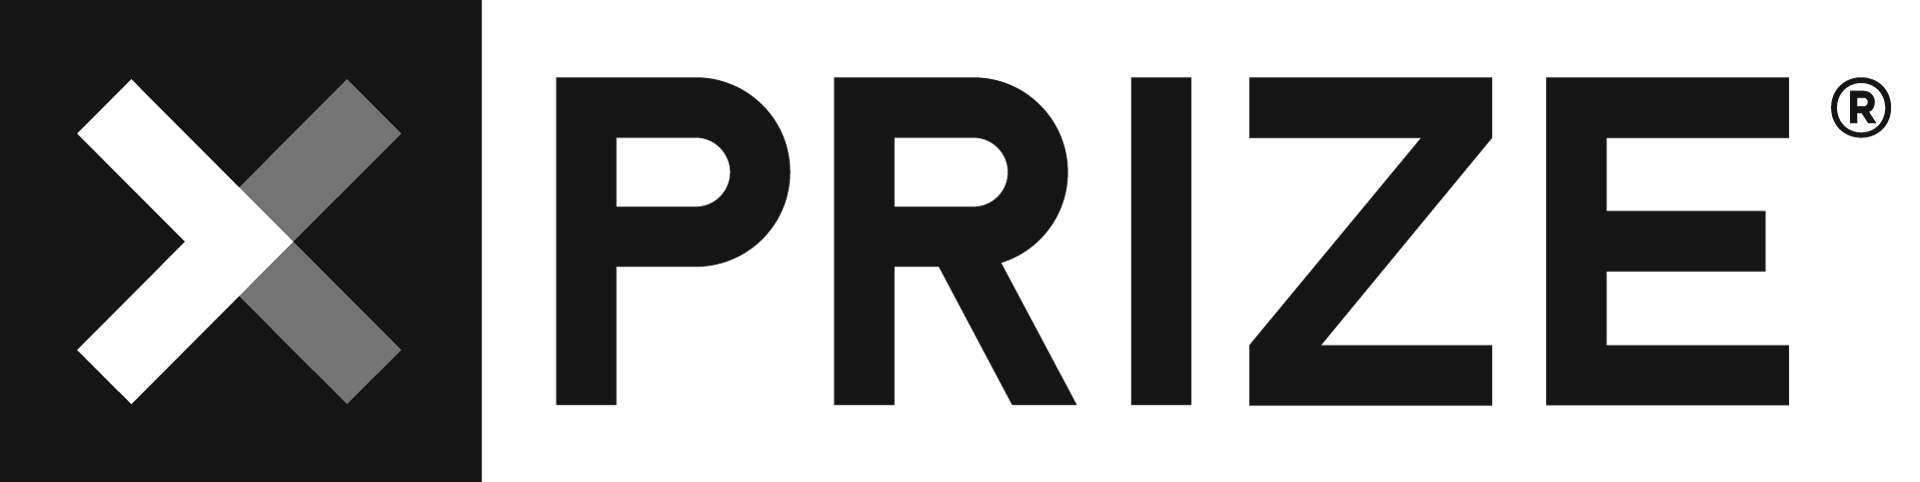 XPRIZE logo